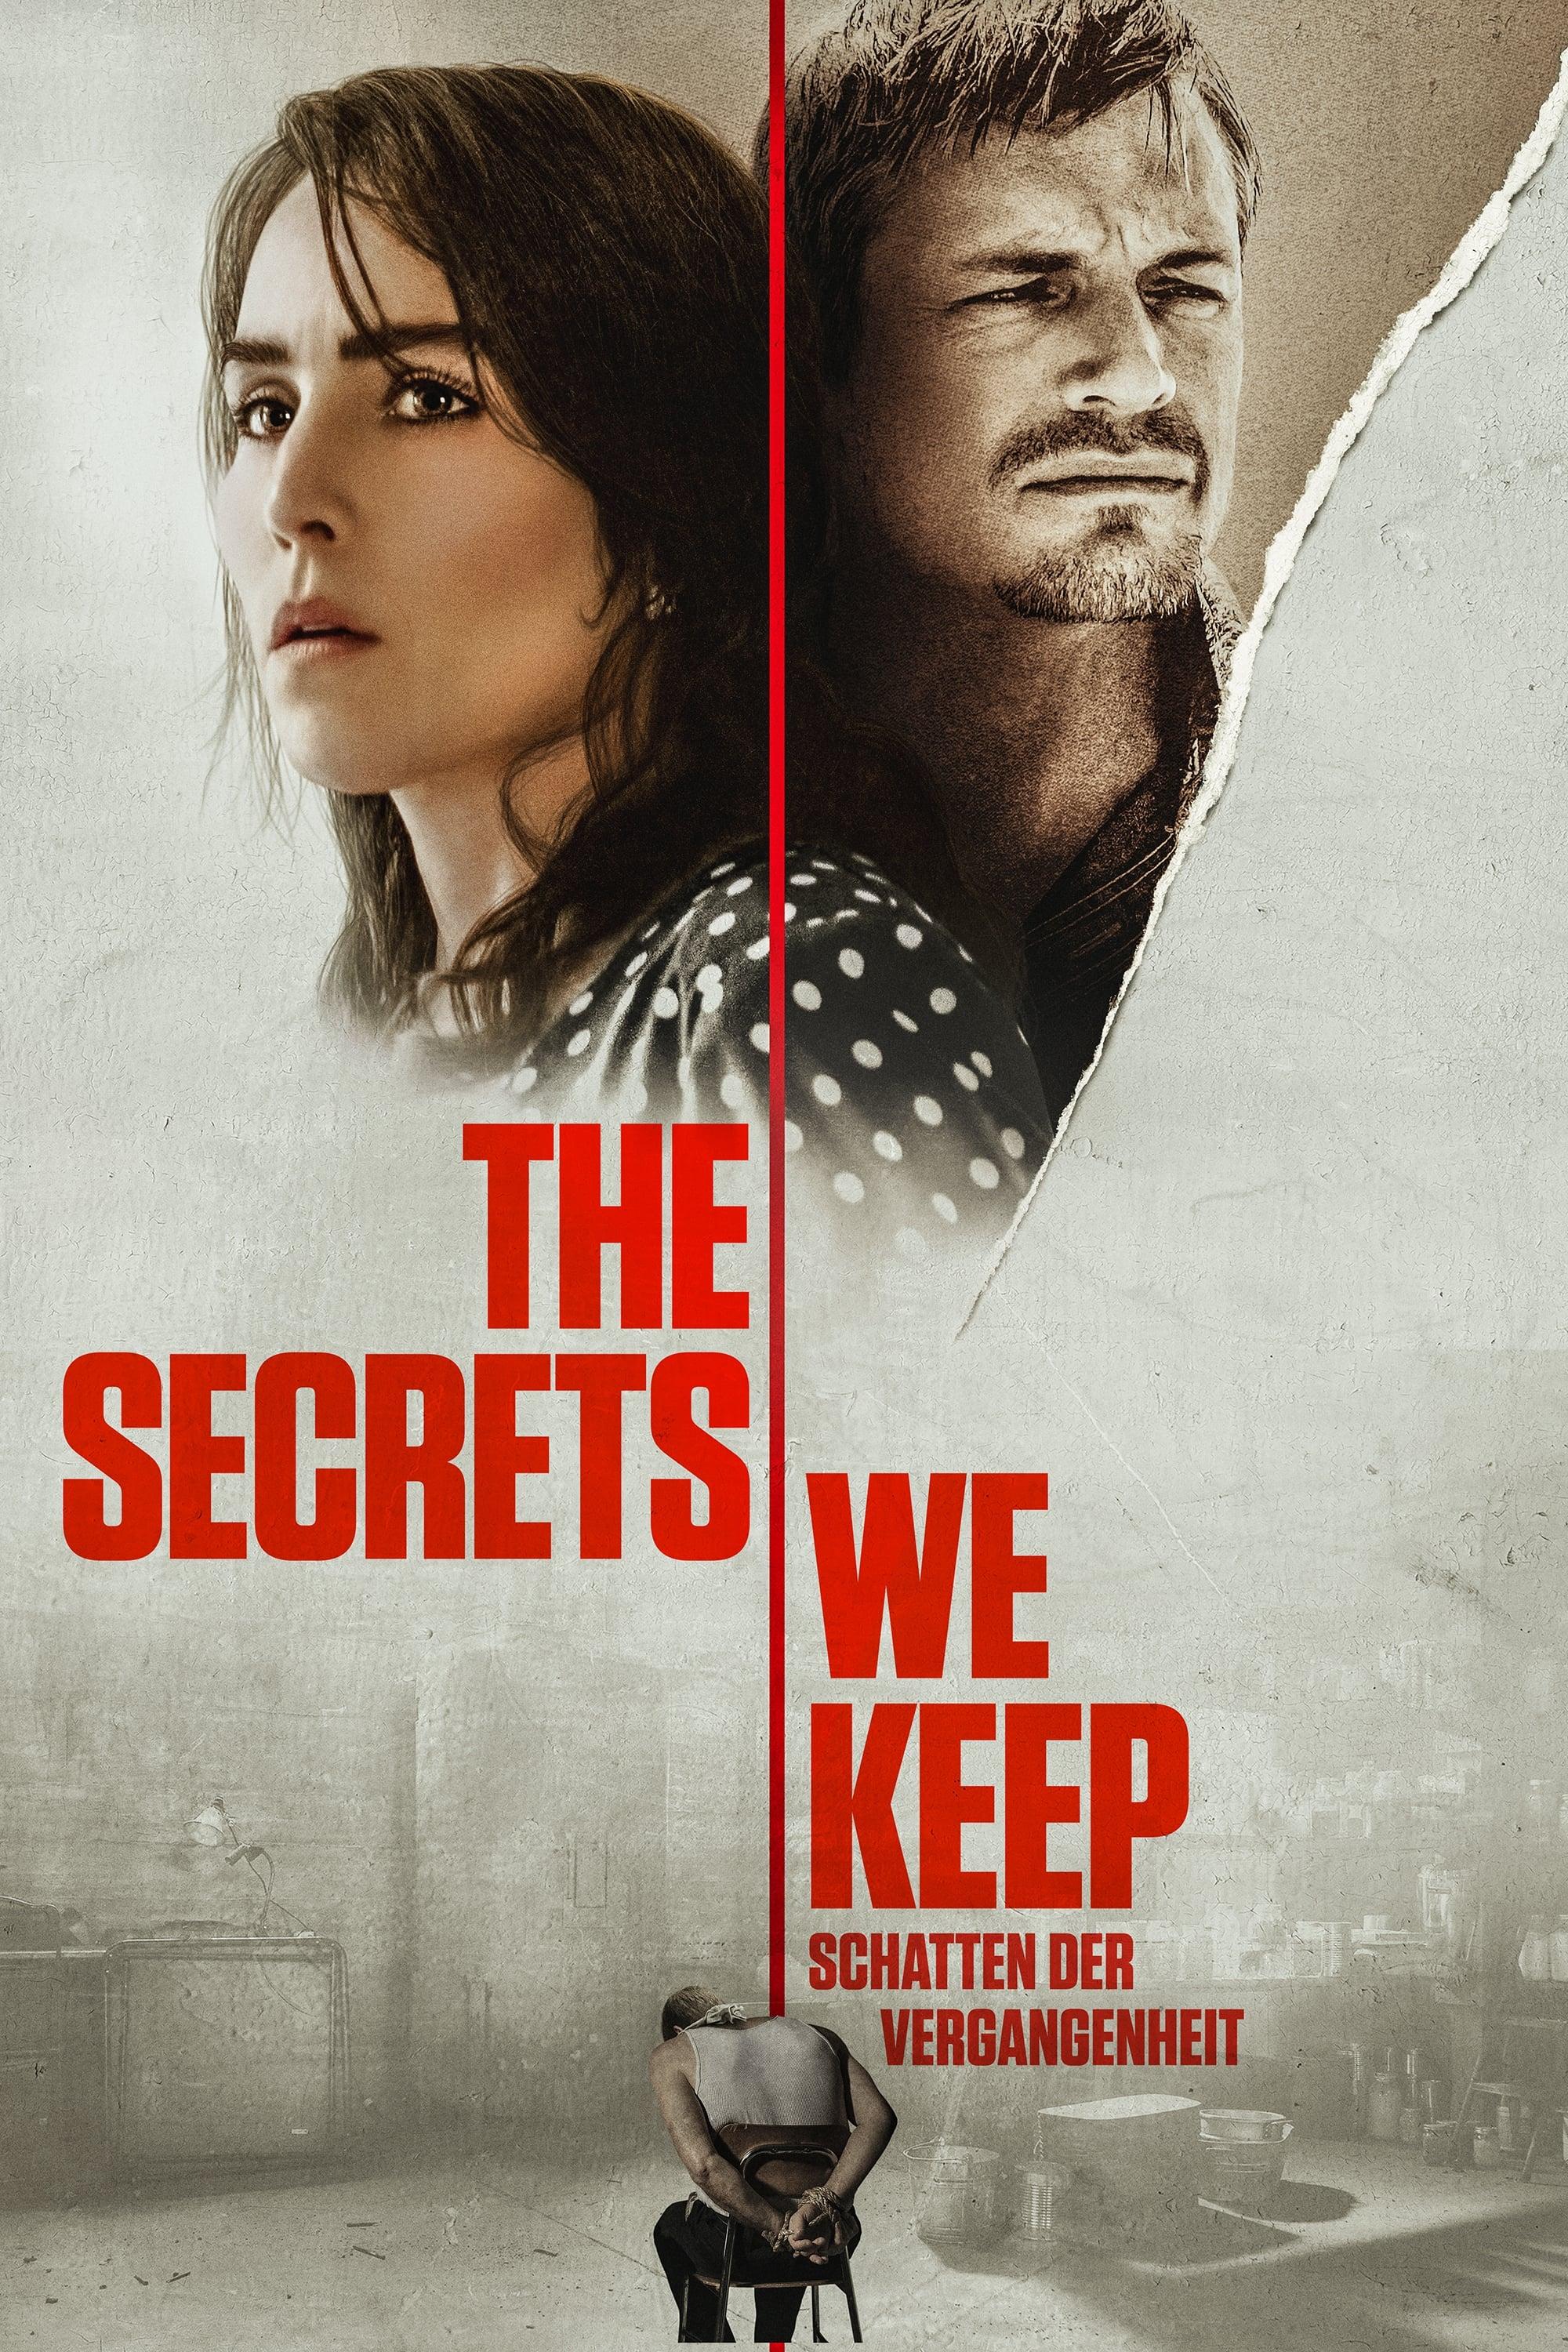 The Secrets We Keep - Schatten der Vergangenheit poster